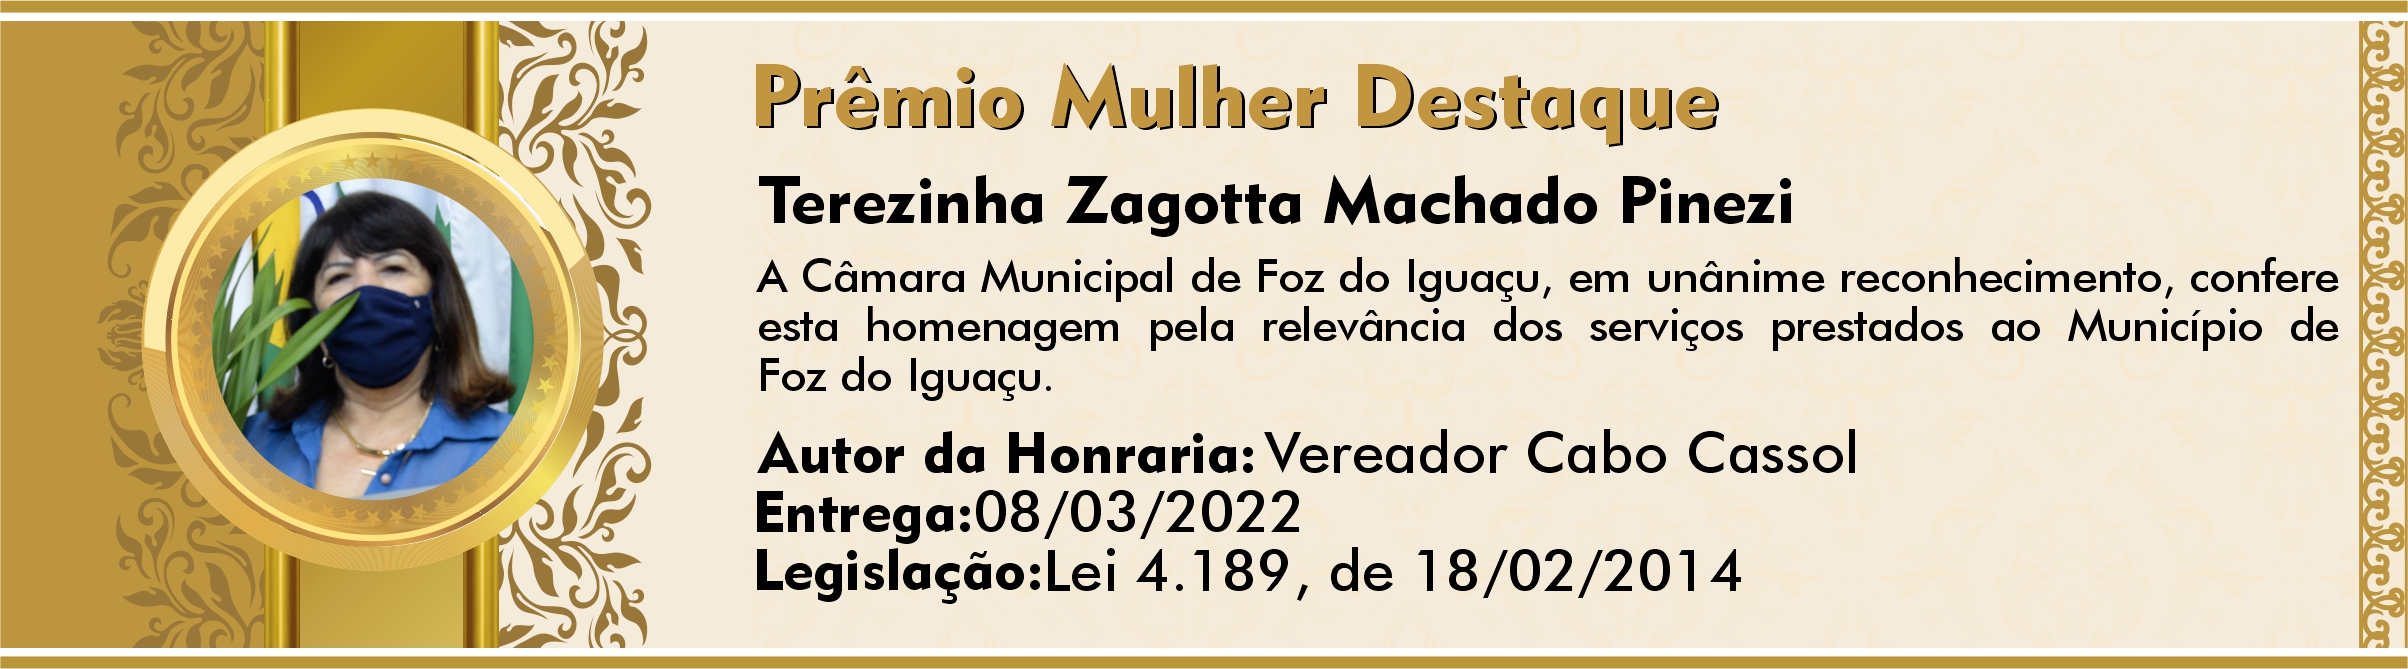 Terezinha Zagotta Machado Pinezi